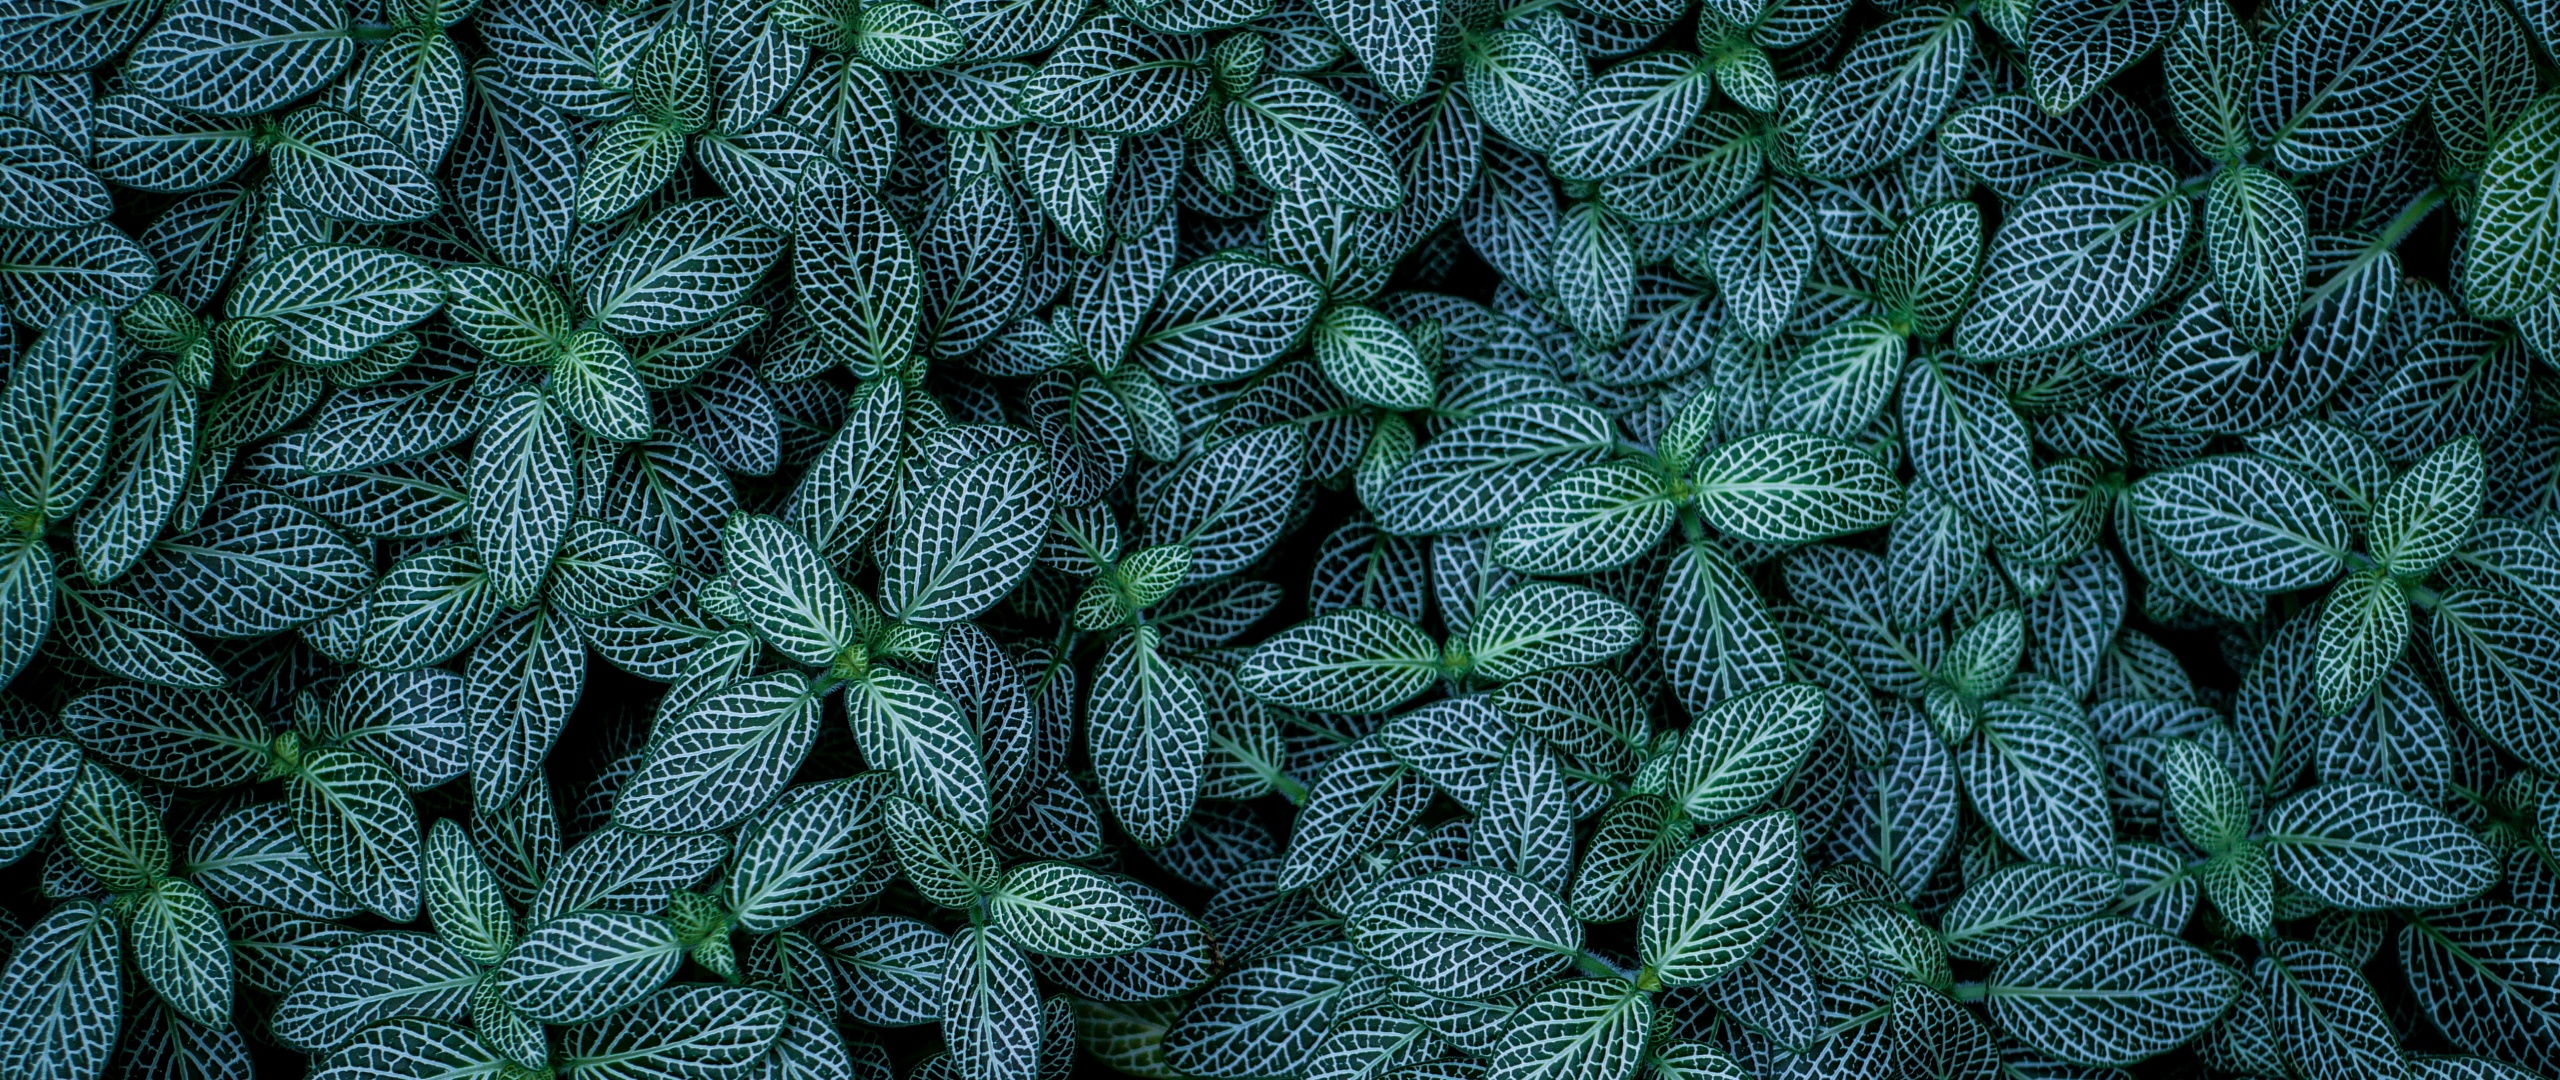 Green leaves Wallpaper 4K, Plants, Leaf Background, Nature, #2434